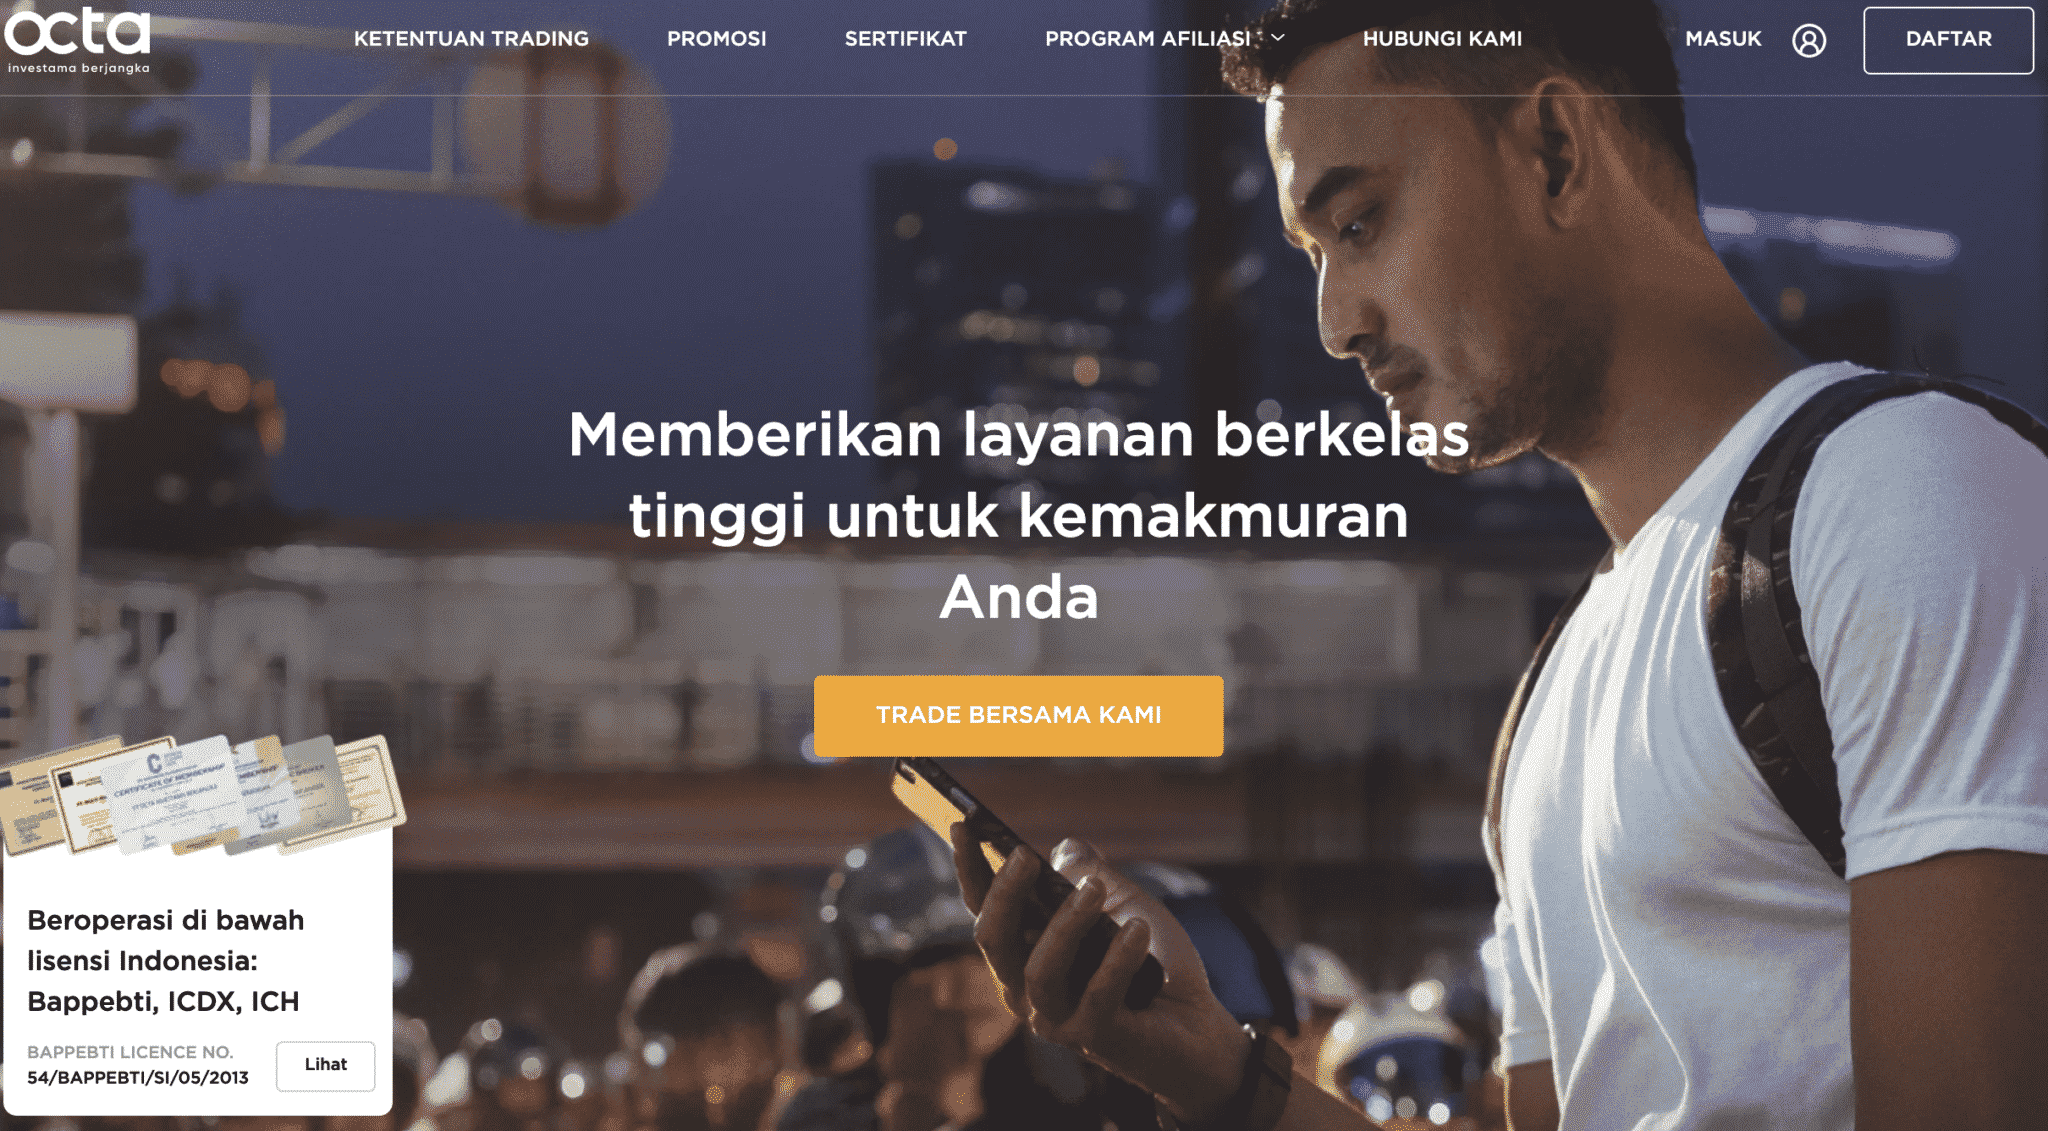 10 Kriteria Forex Brokers Trading Terbaik Terpercaya Indonesia